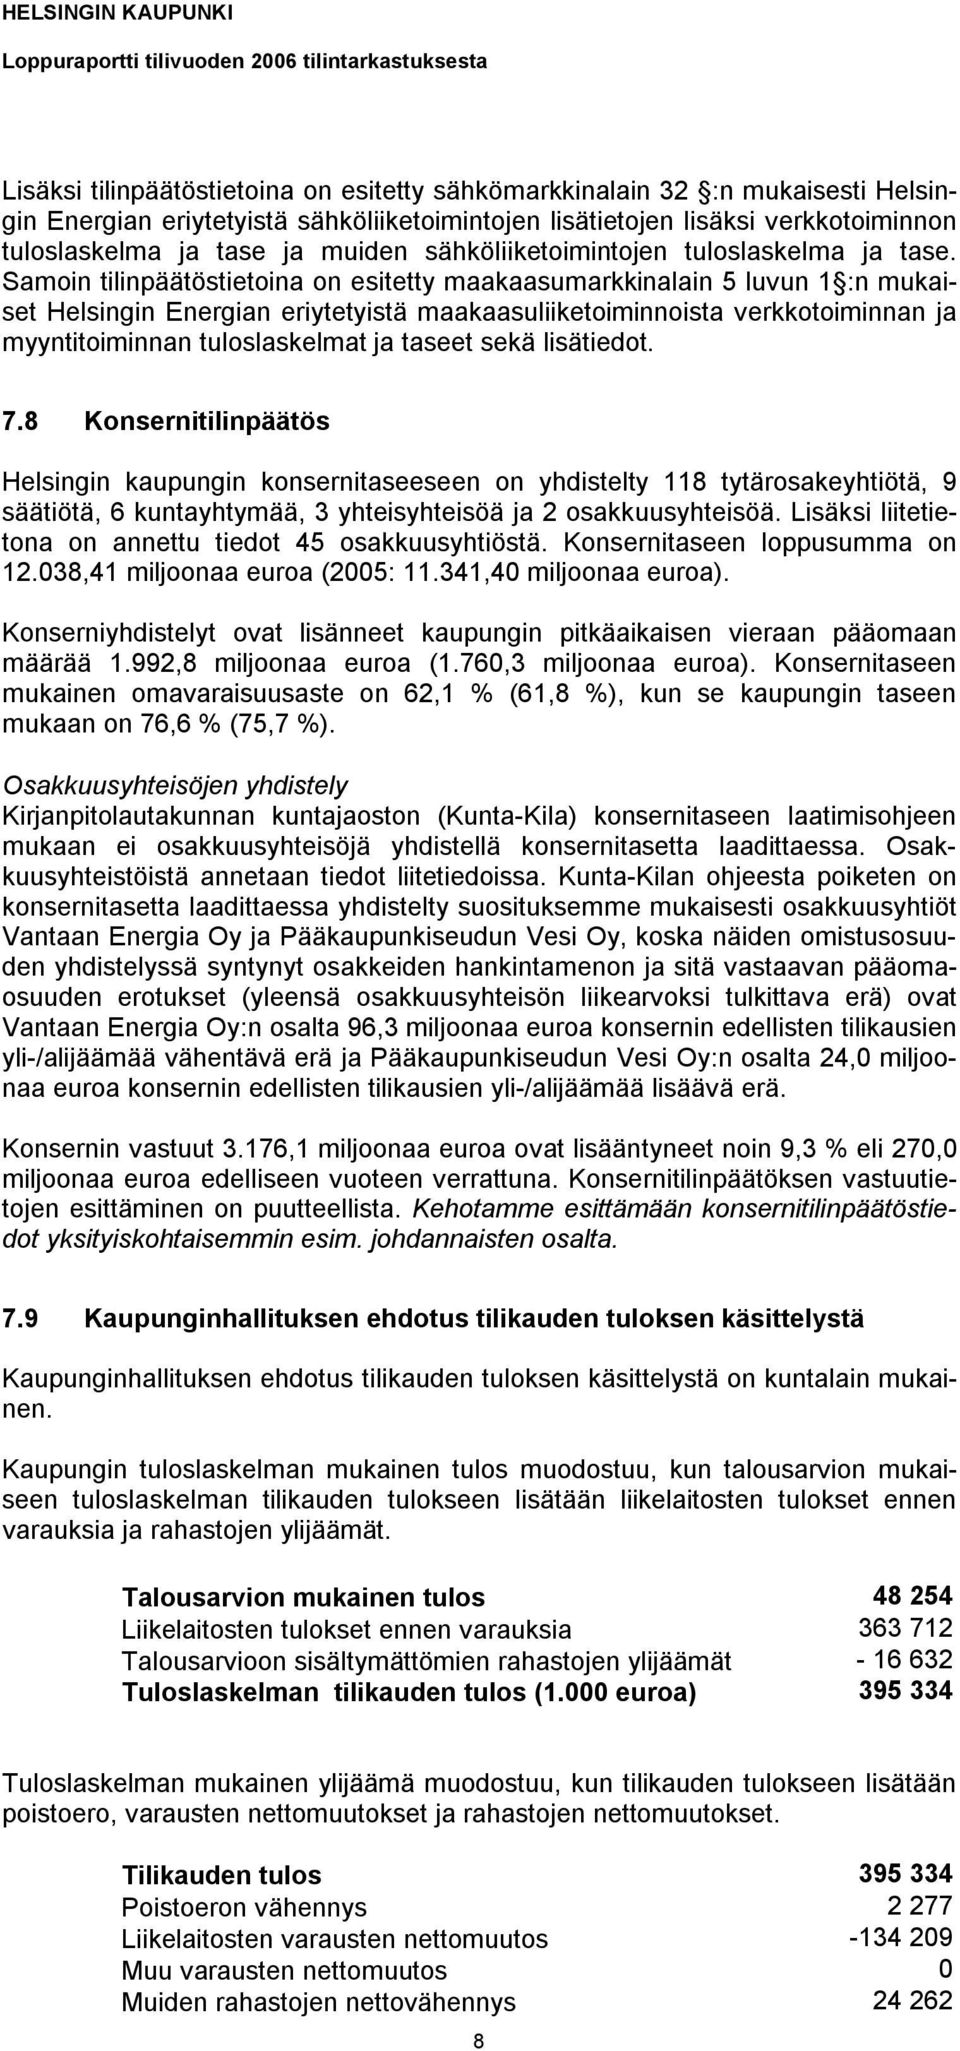 Samoin tilinpäätöstietoina on esitetty maakaasumarkkinalain 5 luvun 1 :n mukaiset Helsingin Energian eriytetyistä maakaasuliiketoiminnoista verkkotoiminnan ja myyntitoiminnan tuloslaskelmat ja taseet